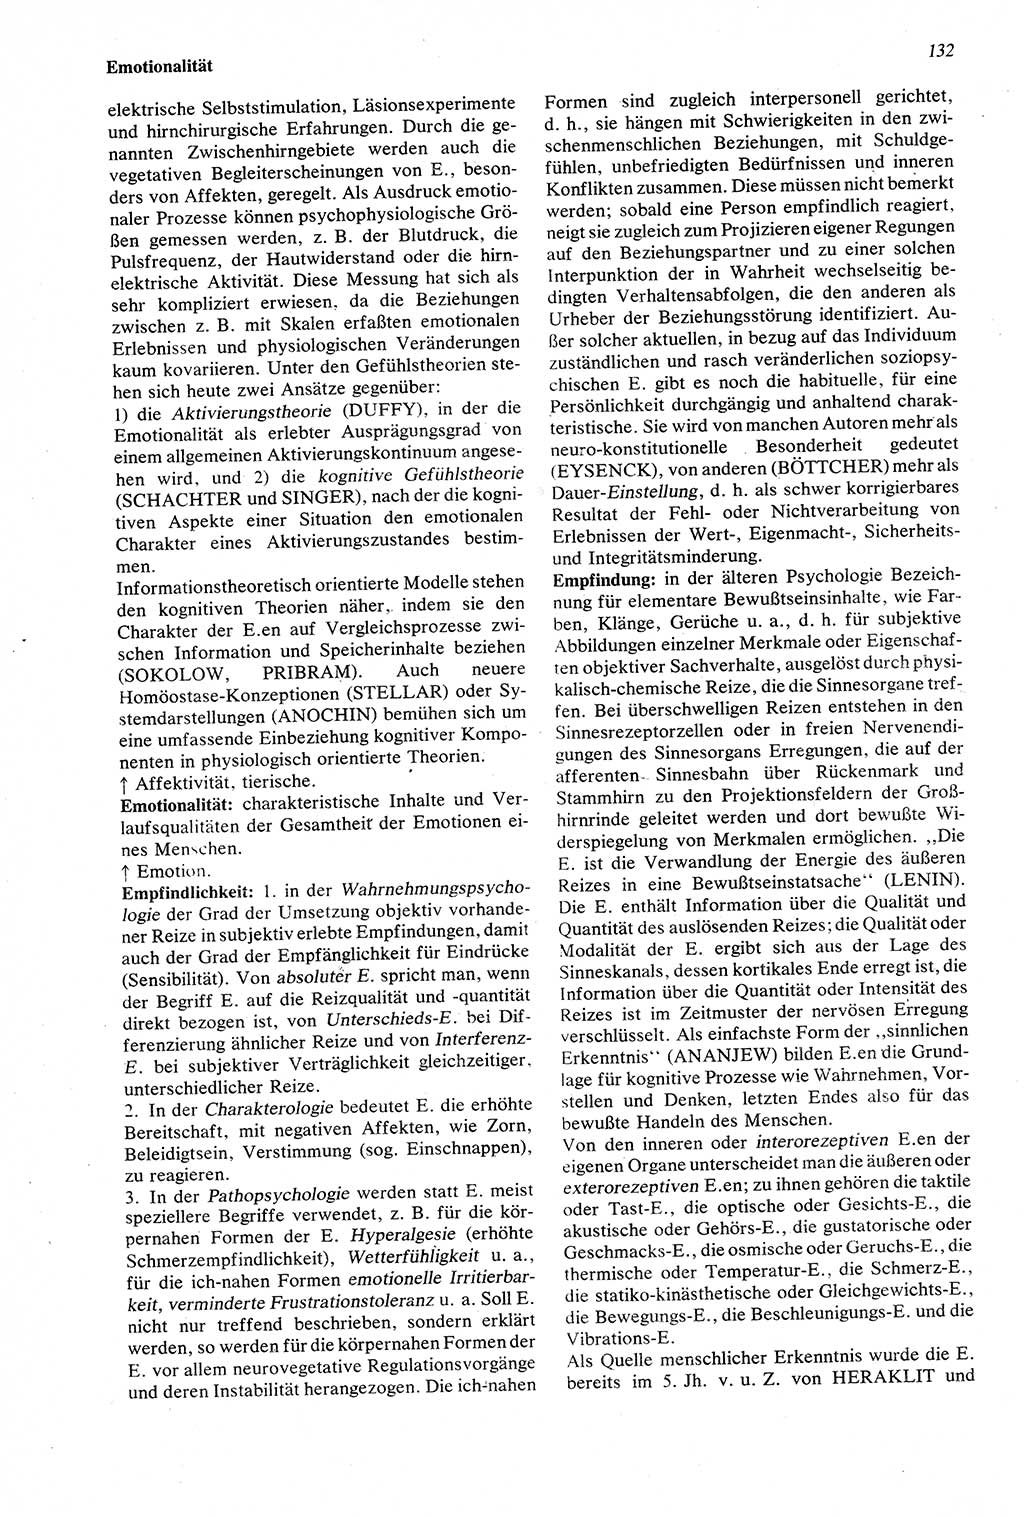 Wörterbuch der Psychologie [Deutsche Demokratische Republik (DDR)] 1976, Seite 132 (Wb. Psych. DDR 1976, S. 132)